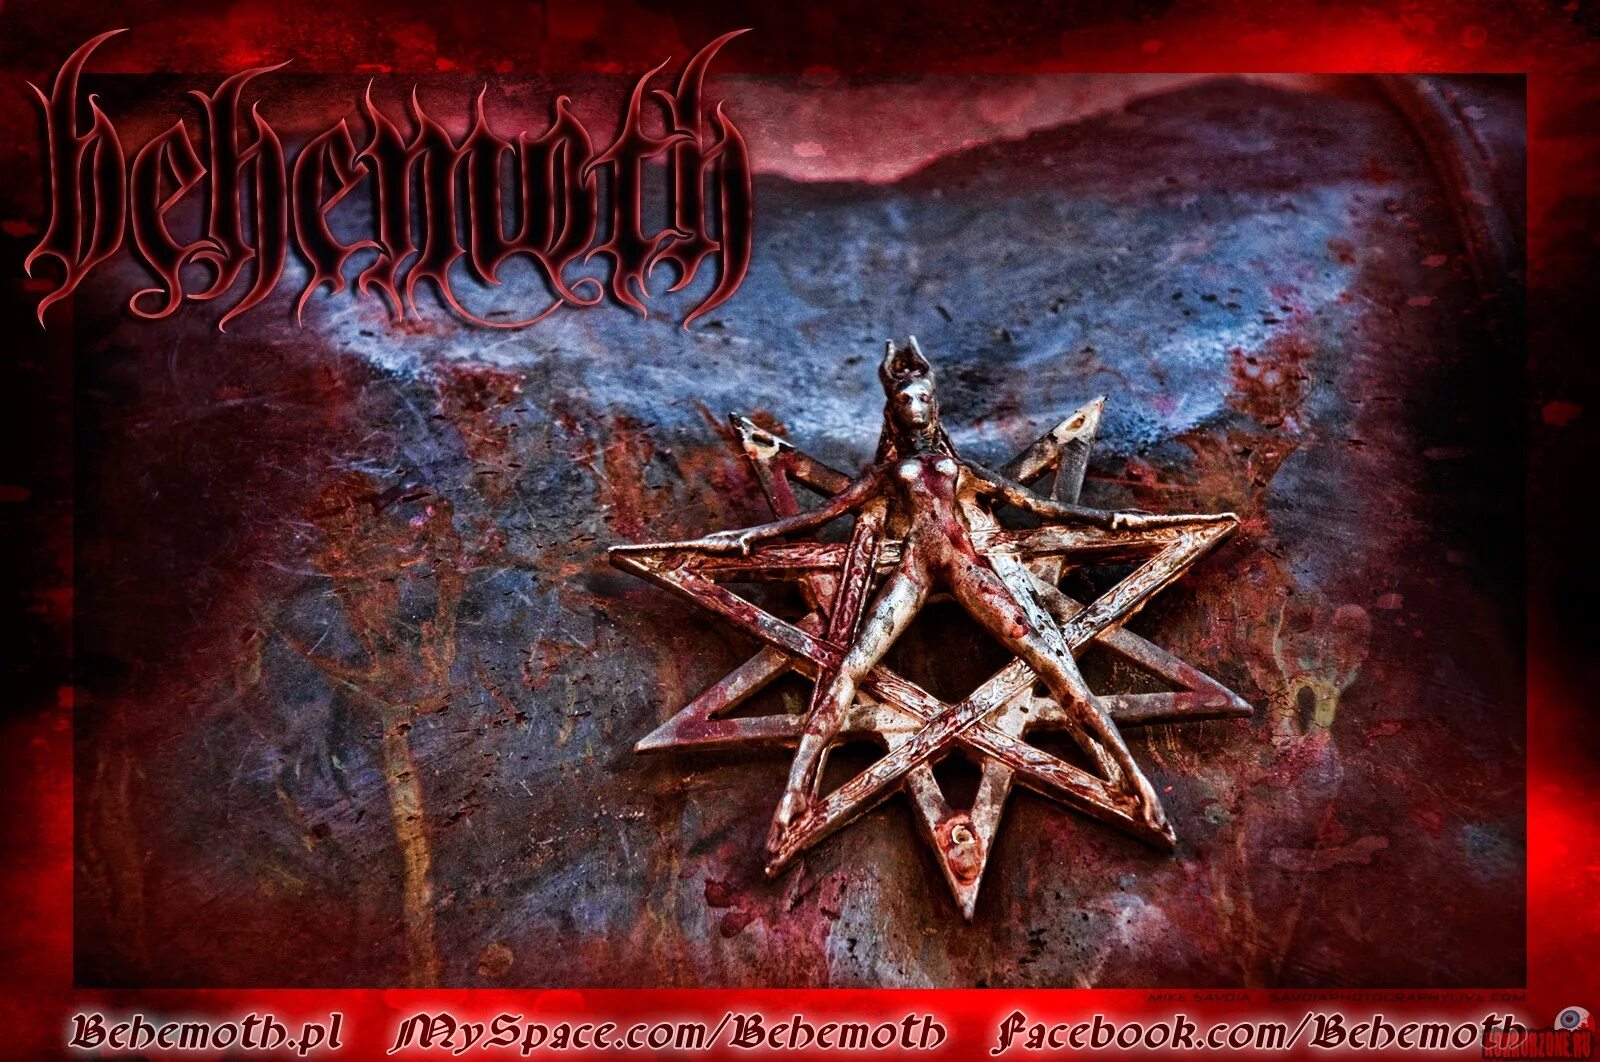 Thelema bass. Behemoth Thelema 6. Behemoth Thelema 6 2000. Behemoth дискография. Behemoth обложки альбомов.